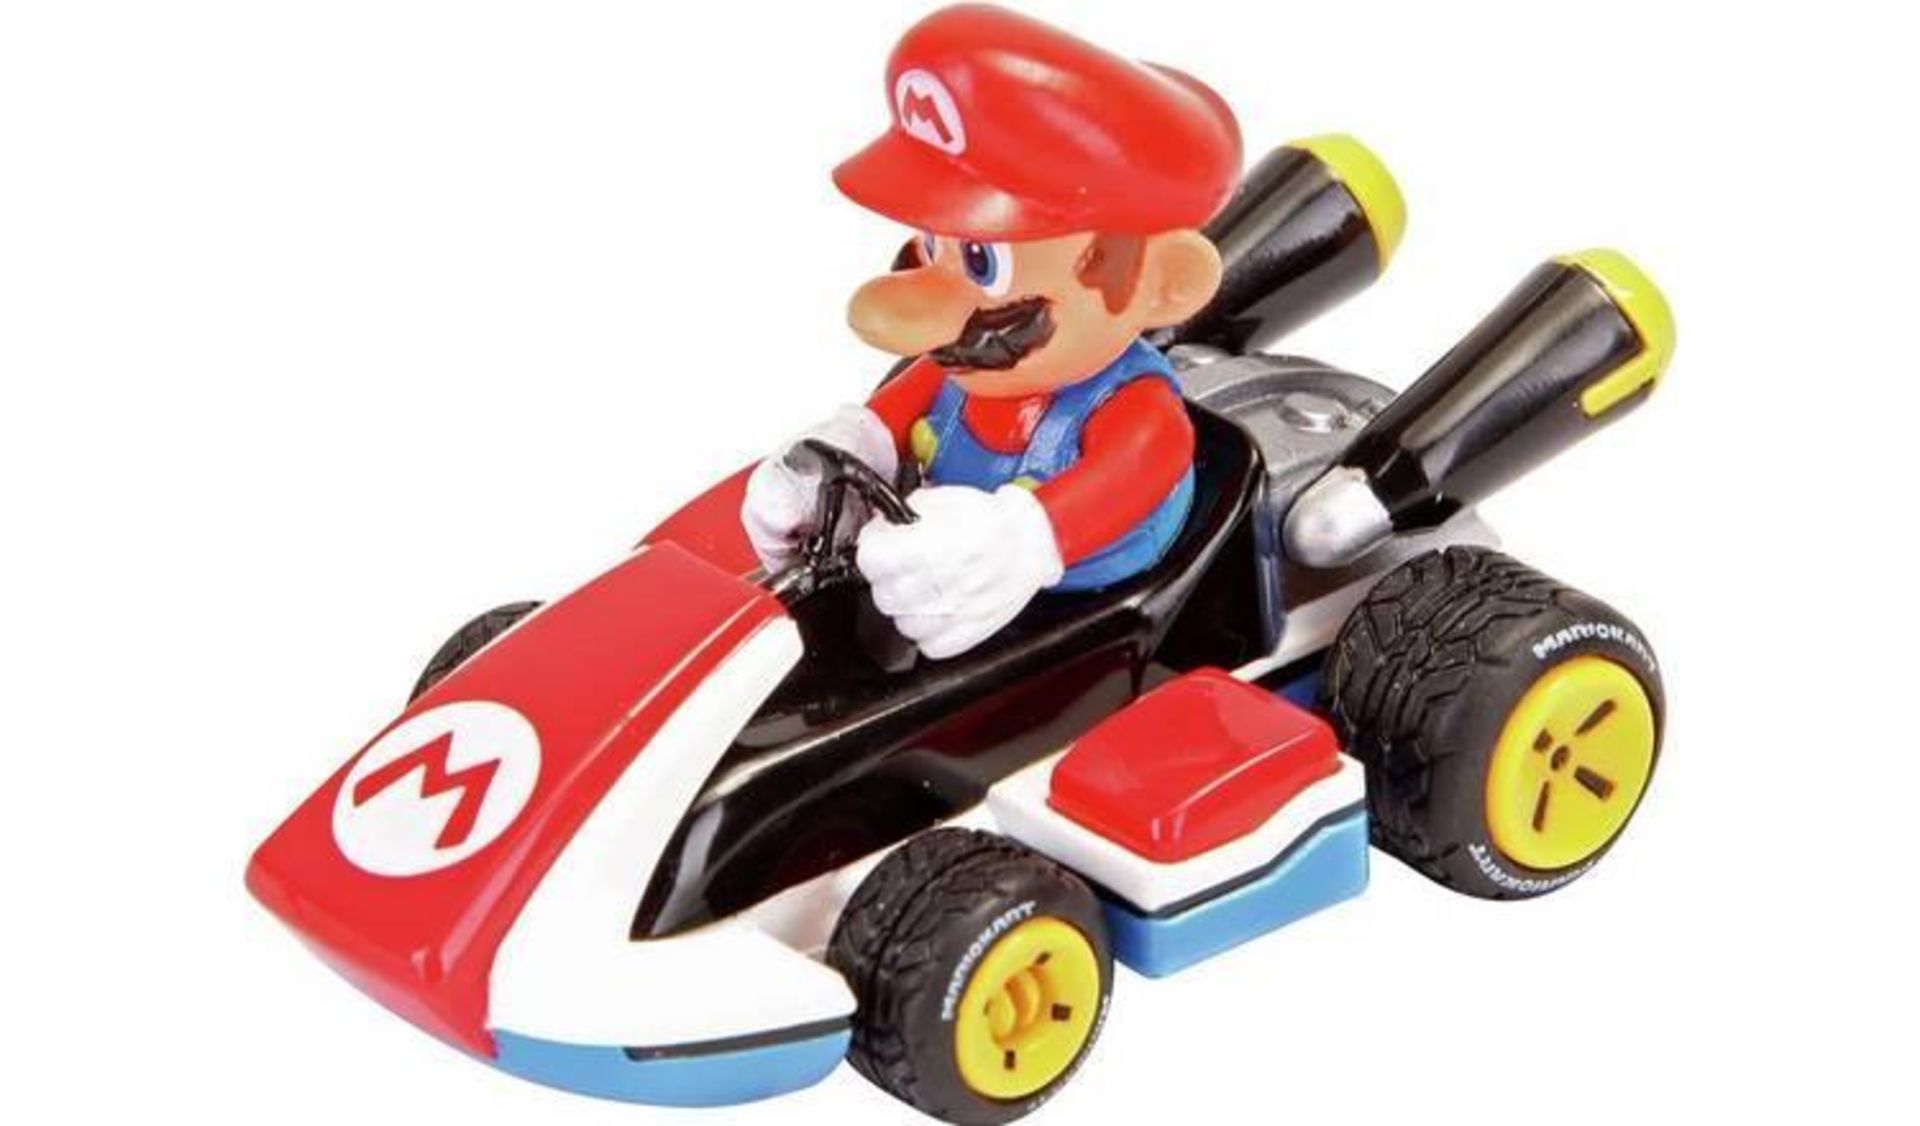 Nintendo Mario Kart 8 Pull & Speed Racers - 2 Pack 739/2010 £10.00